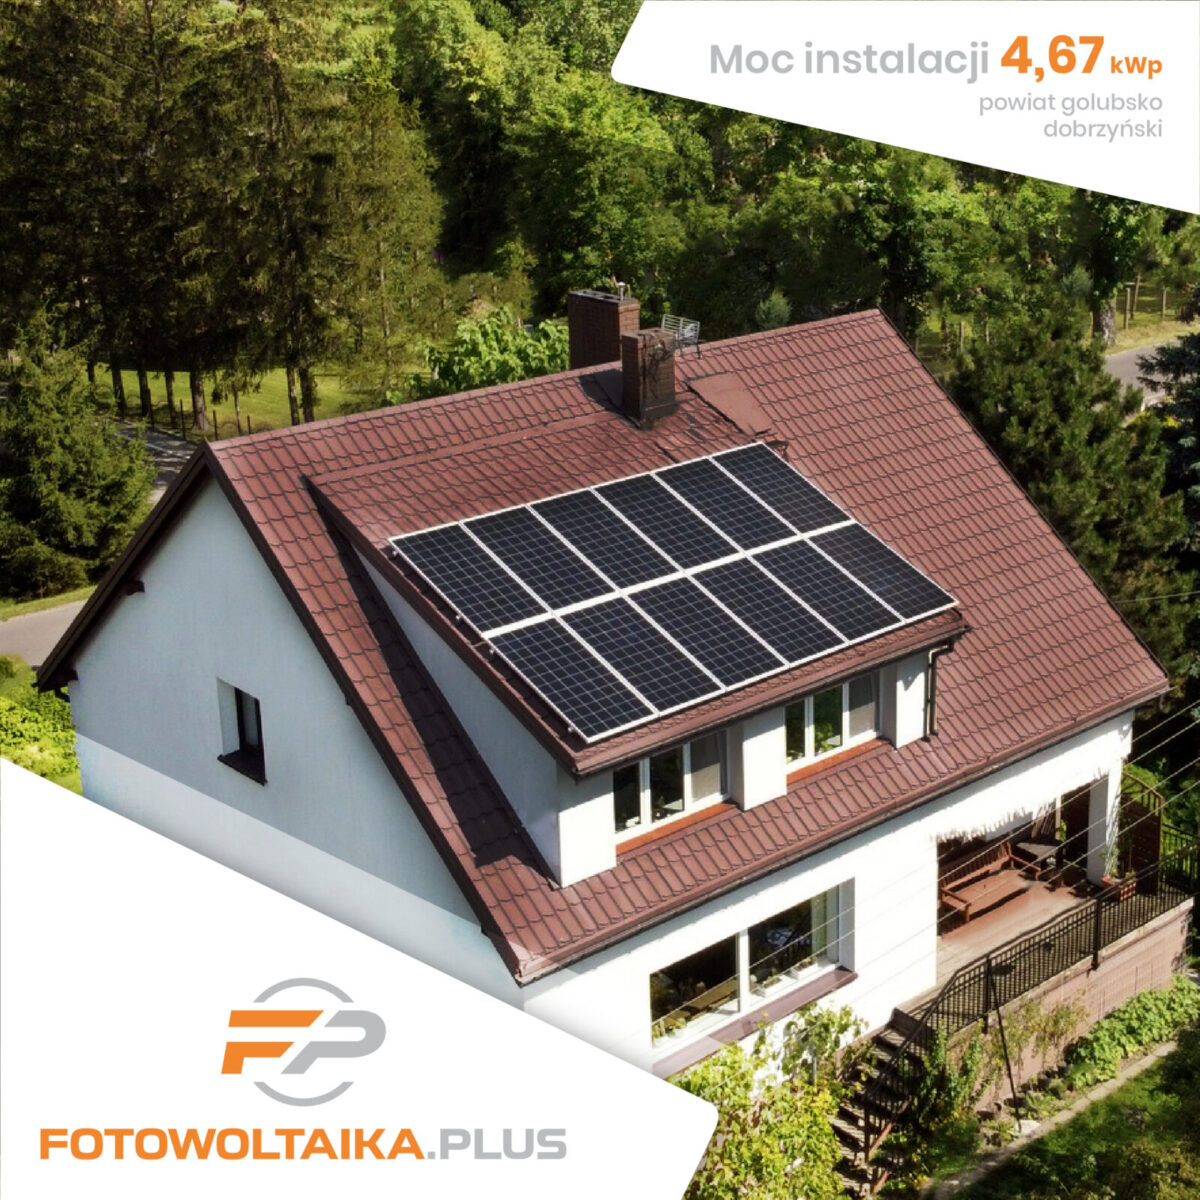 instalacja fotowoltaiczna powiat golubsko-dobrzyński 4,67 kWp